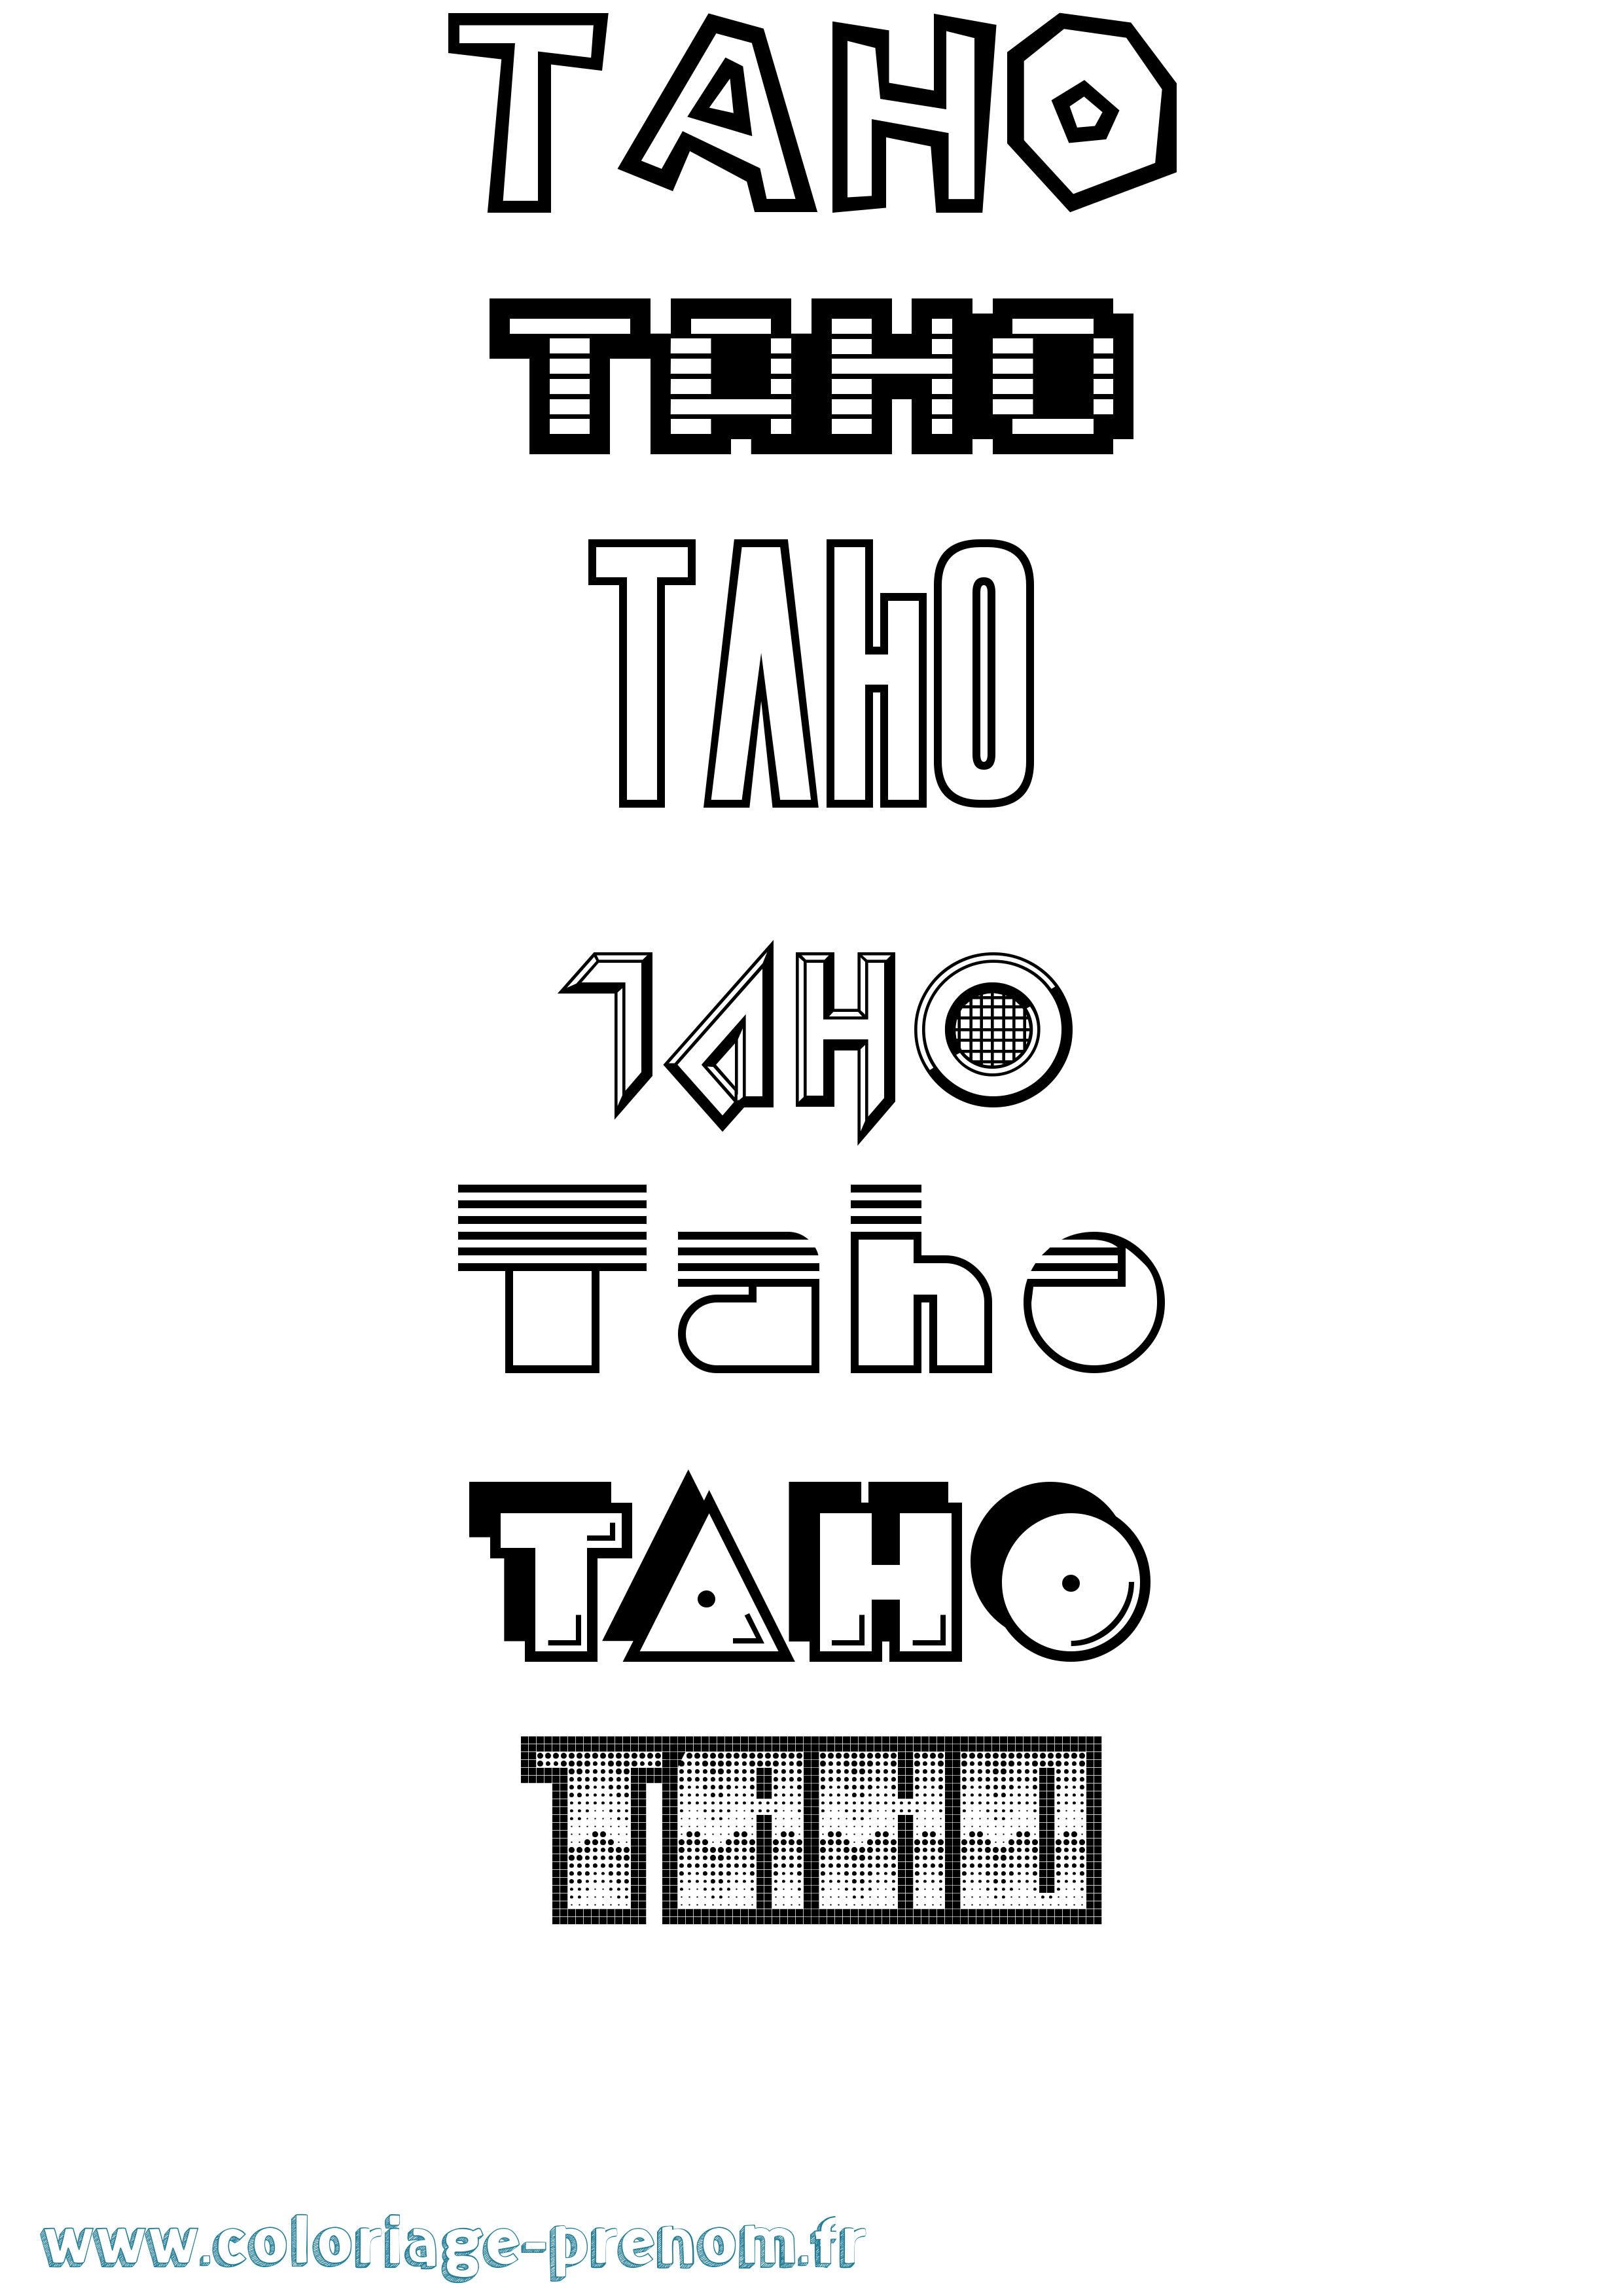 Coloriage prénom Taho Jeux Vidéos